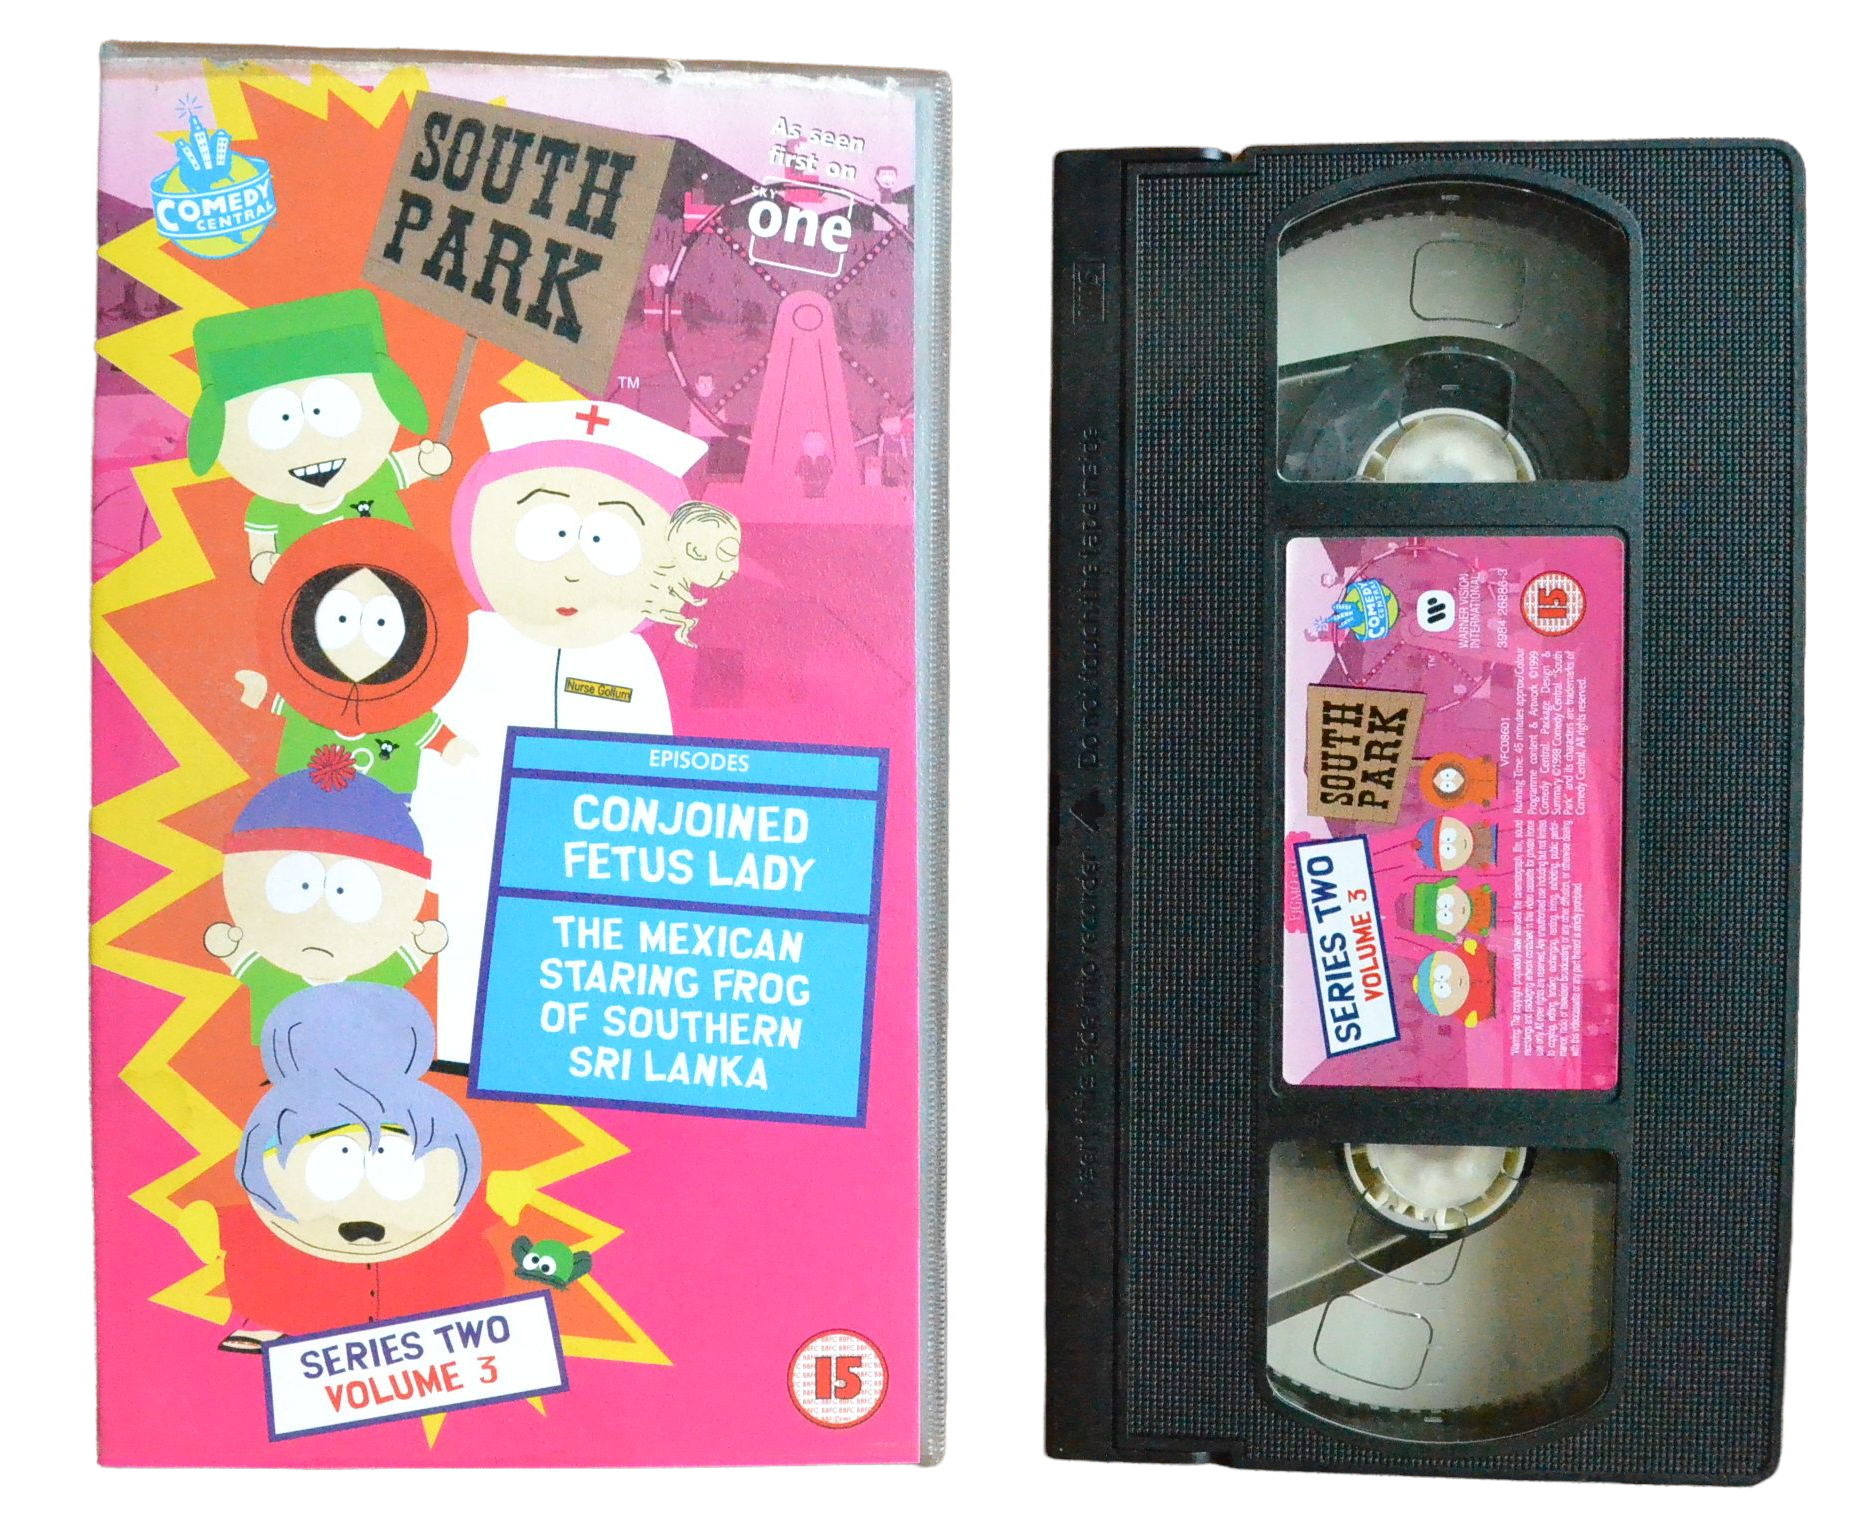 South Park: Series 2 - Volume 3 - Trey Parker - Warner Vision International - Vintage - Pal VHS-